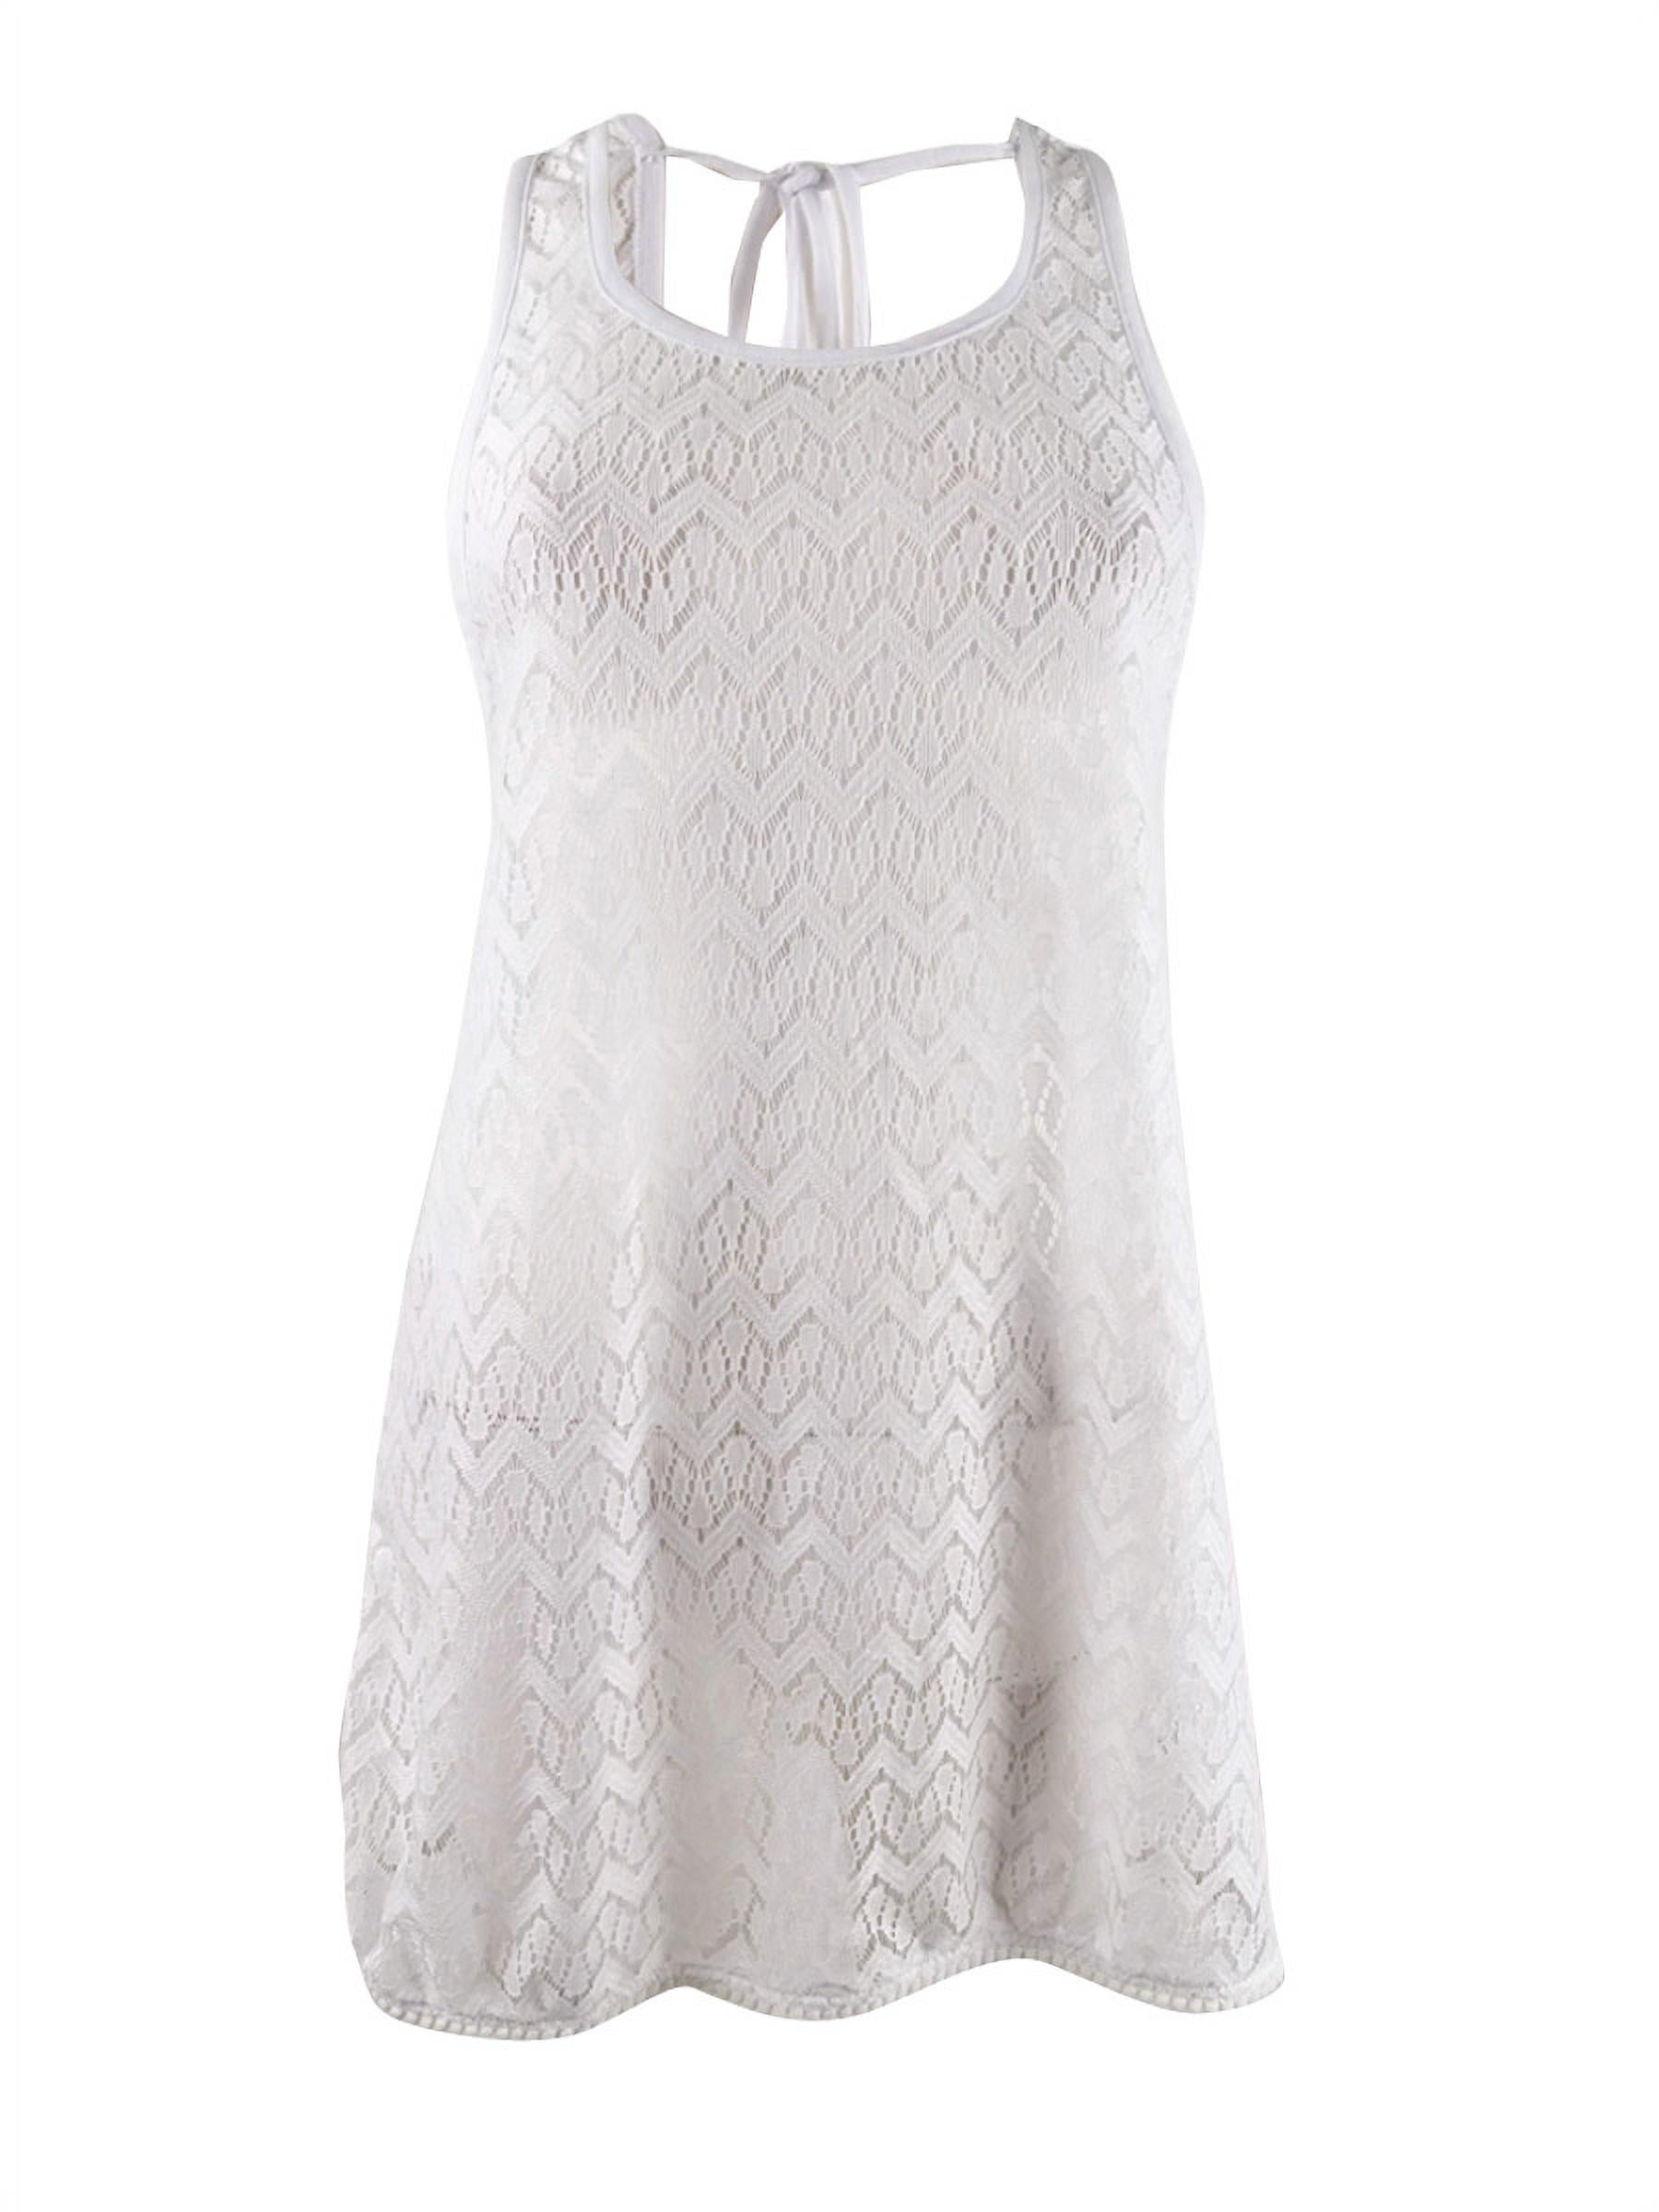 Miken Women's Crocheted Dress Swim Cover-Up (XL, White) - Walmart.com